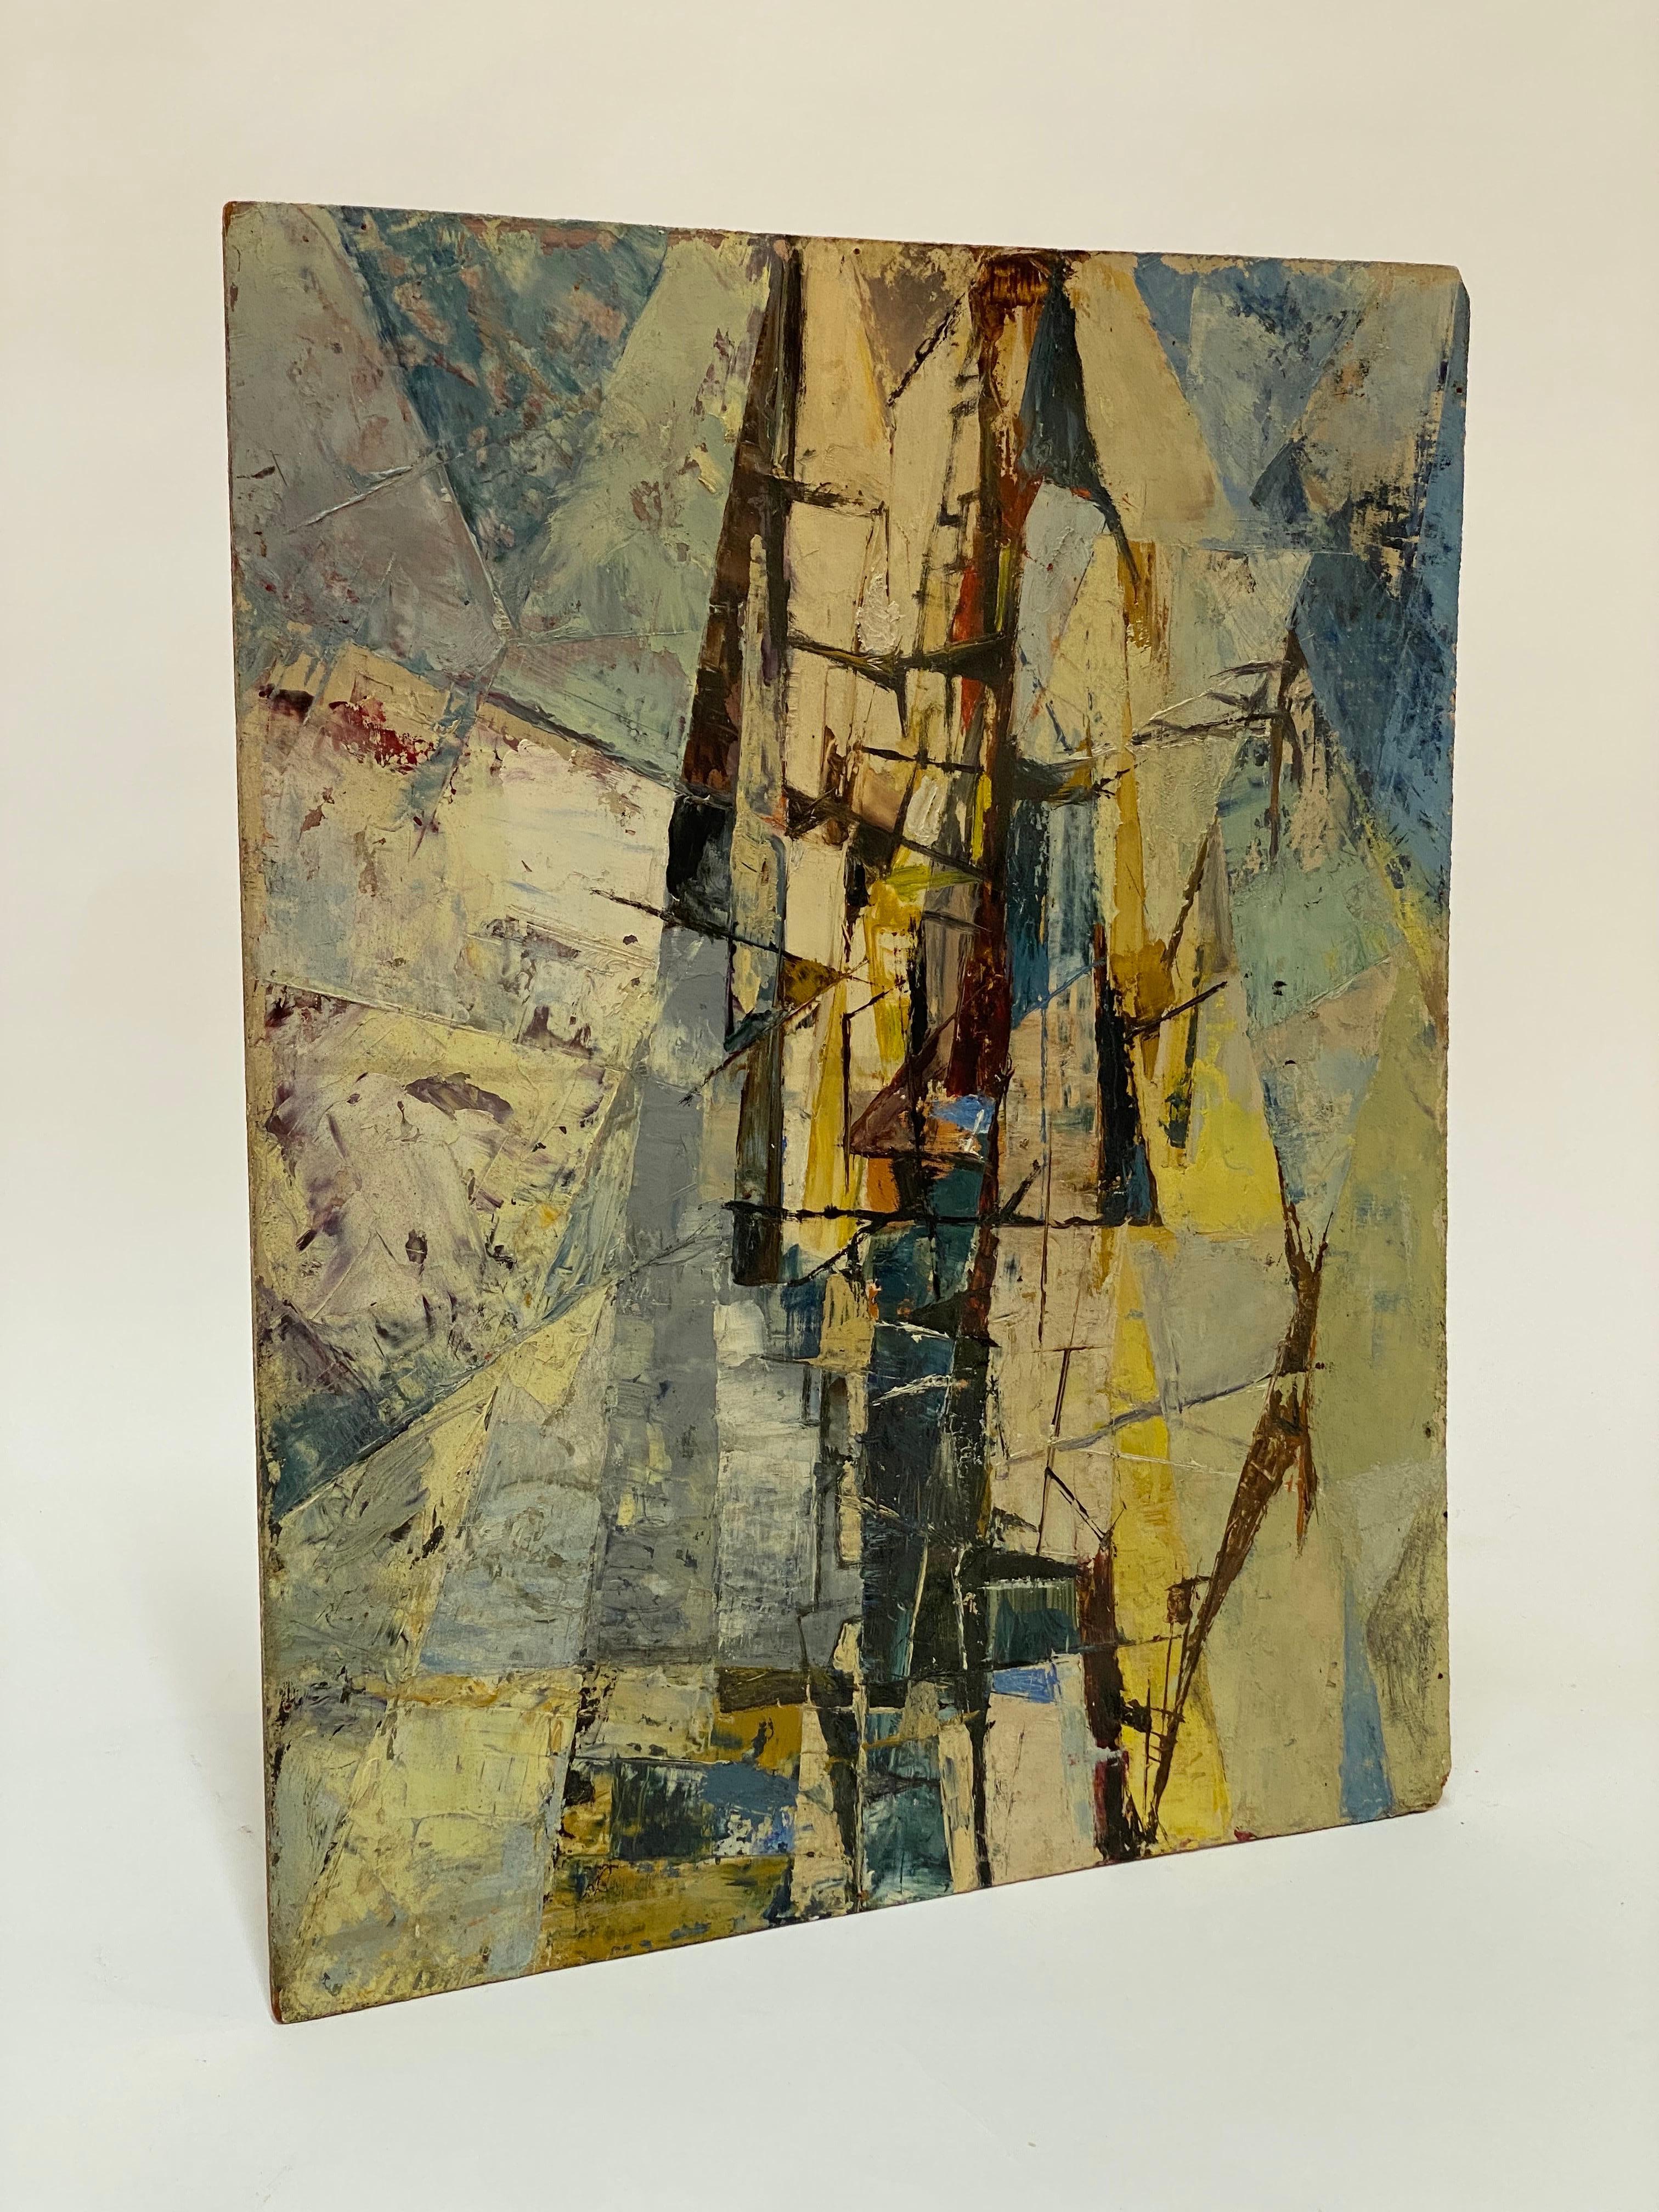 Une peinture à l'huile expressionniste abstraite d'époque sur masonite. Une pièce finement rendue qui révèle une surface très travaillée du médium avec des coups de pinceau et de couteau à palette. Circa 1950-60. Non signée. Cette pièce a été